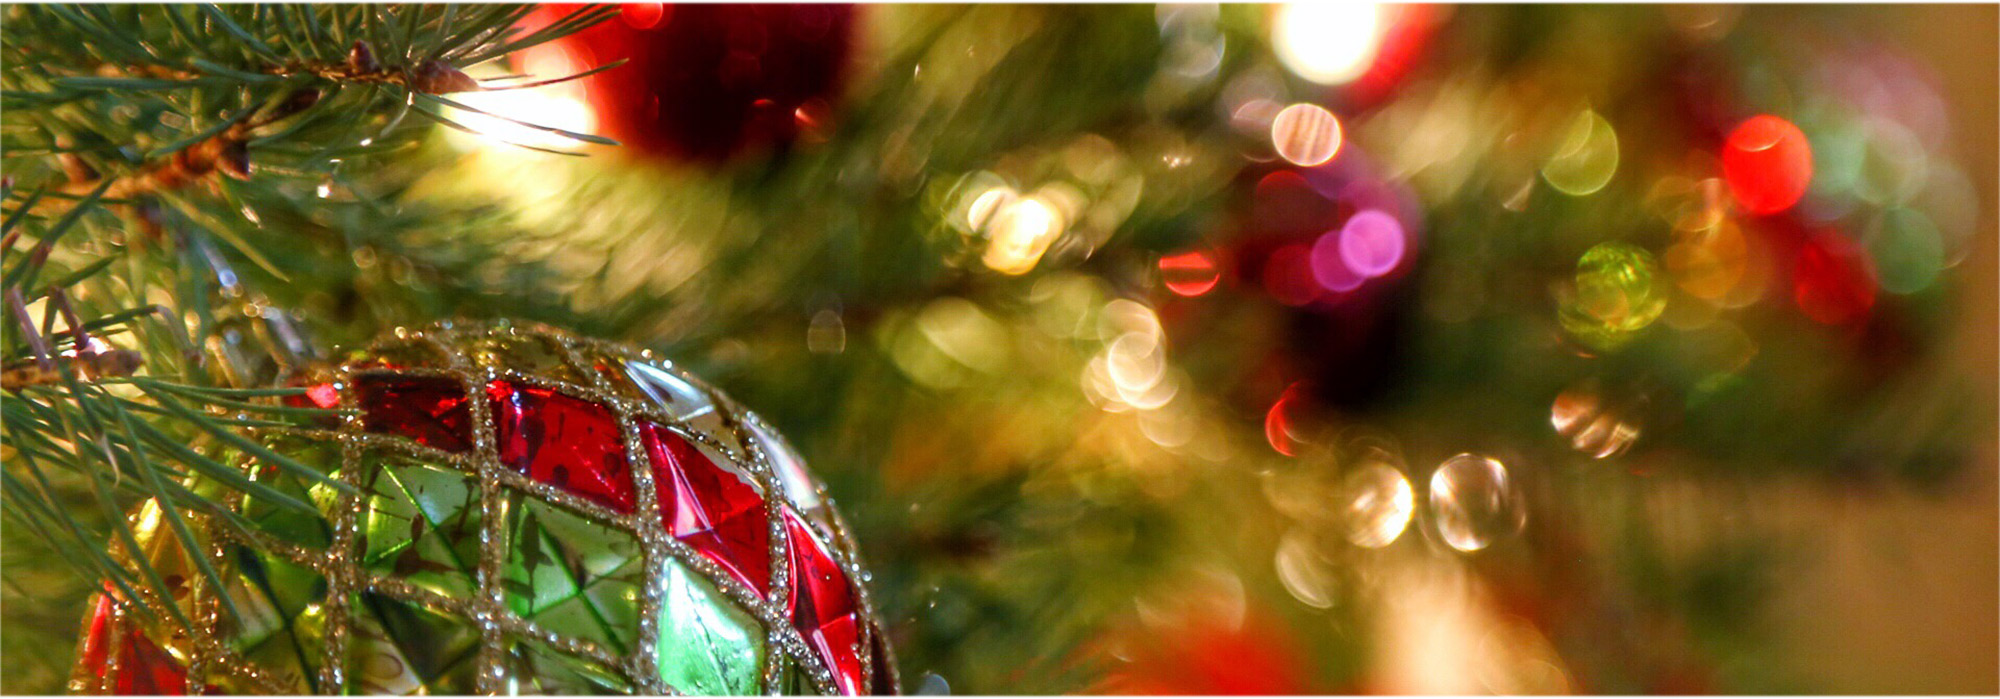 Shiny holiday ornaments on a tree